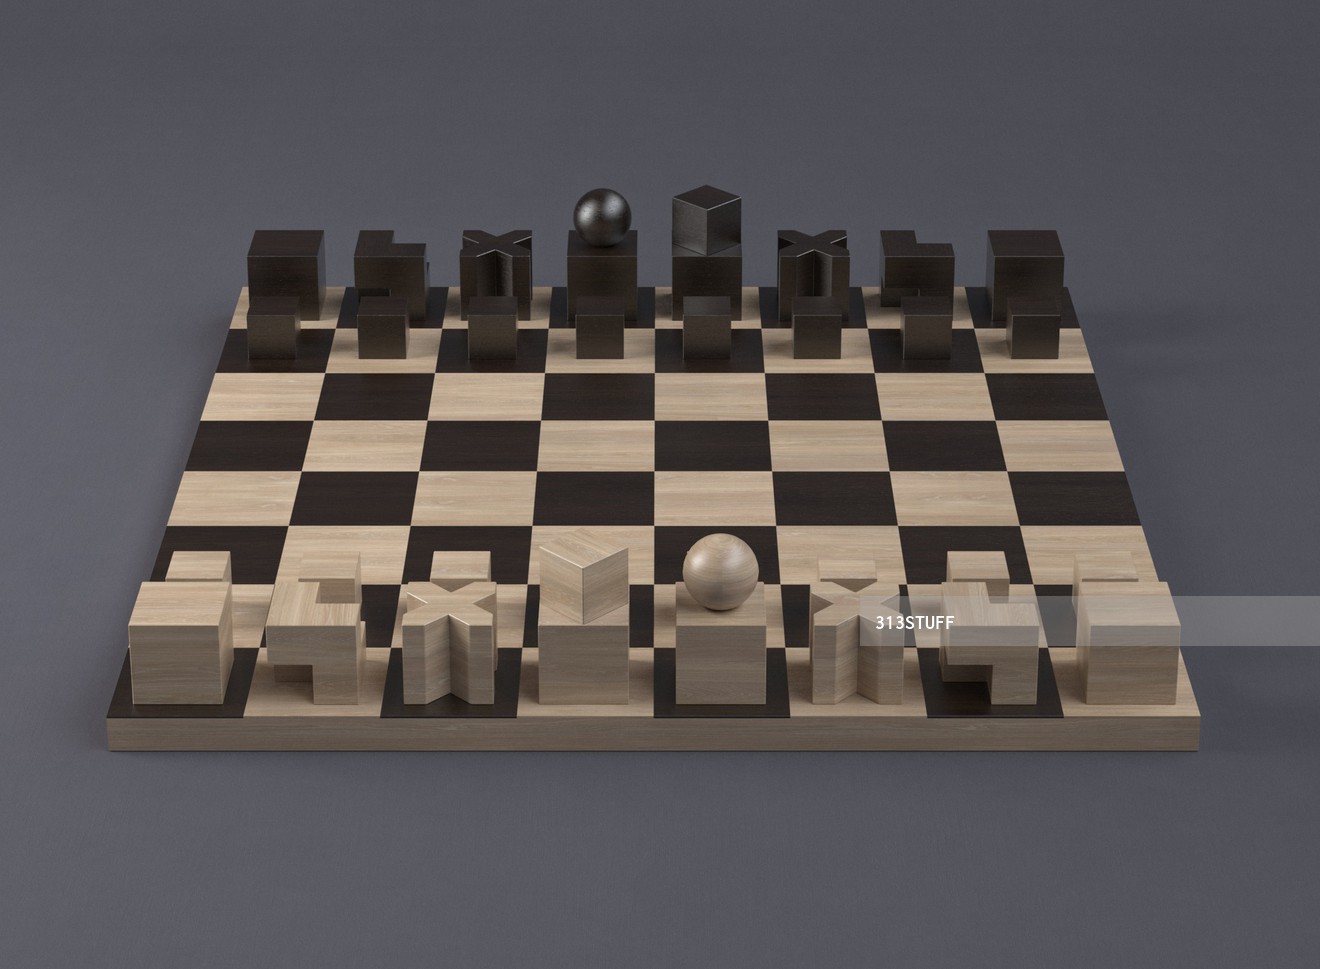 Naef Bauhaus Chess set